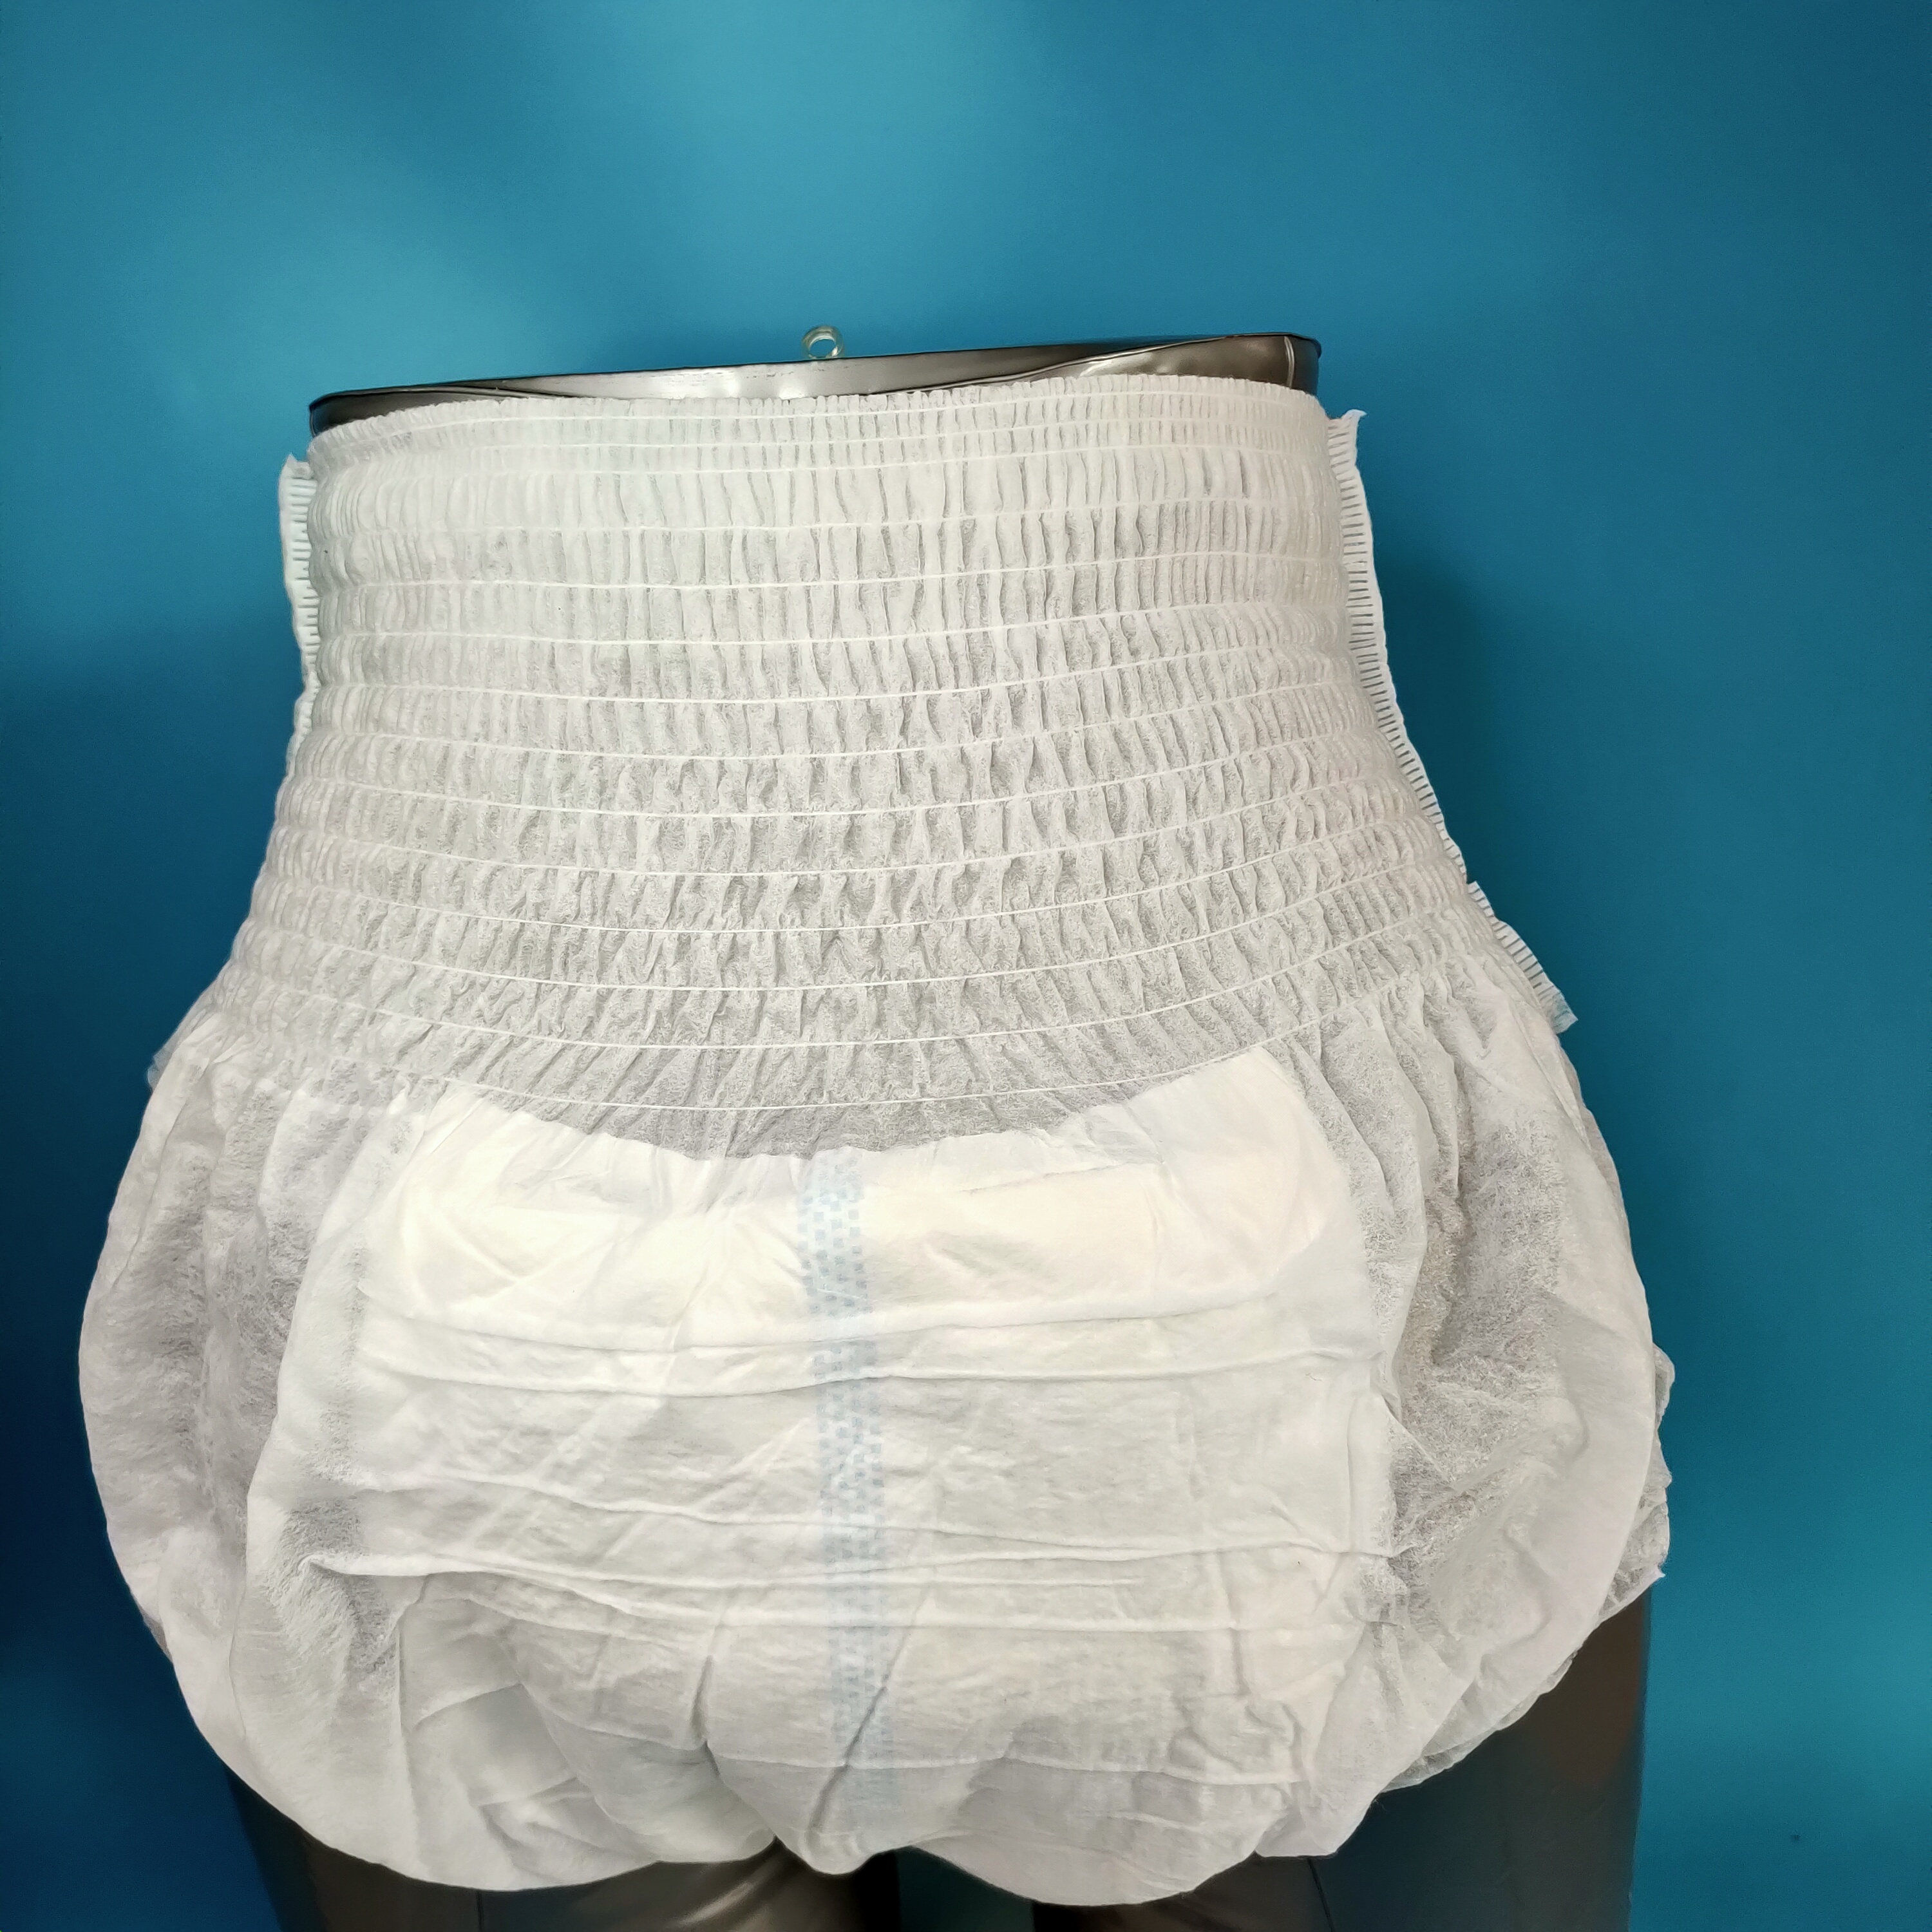 Bragas de pañal para adultos de alta calidad, incontinencia antigua y pantalón de entrenamiento para mujeres mayores